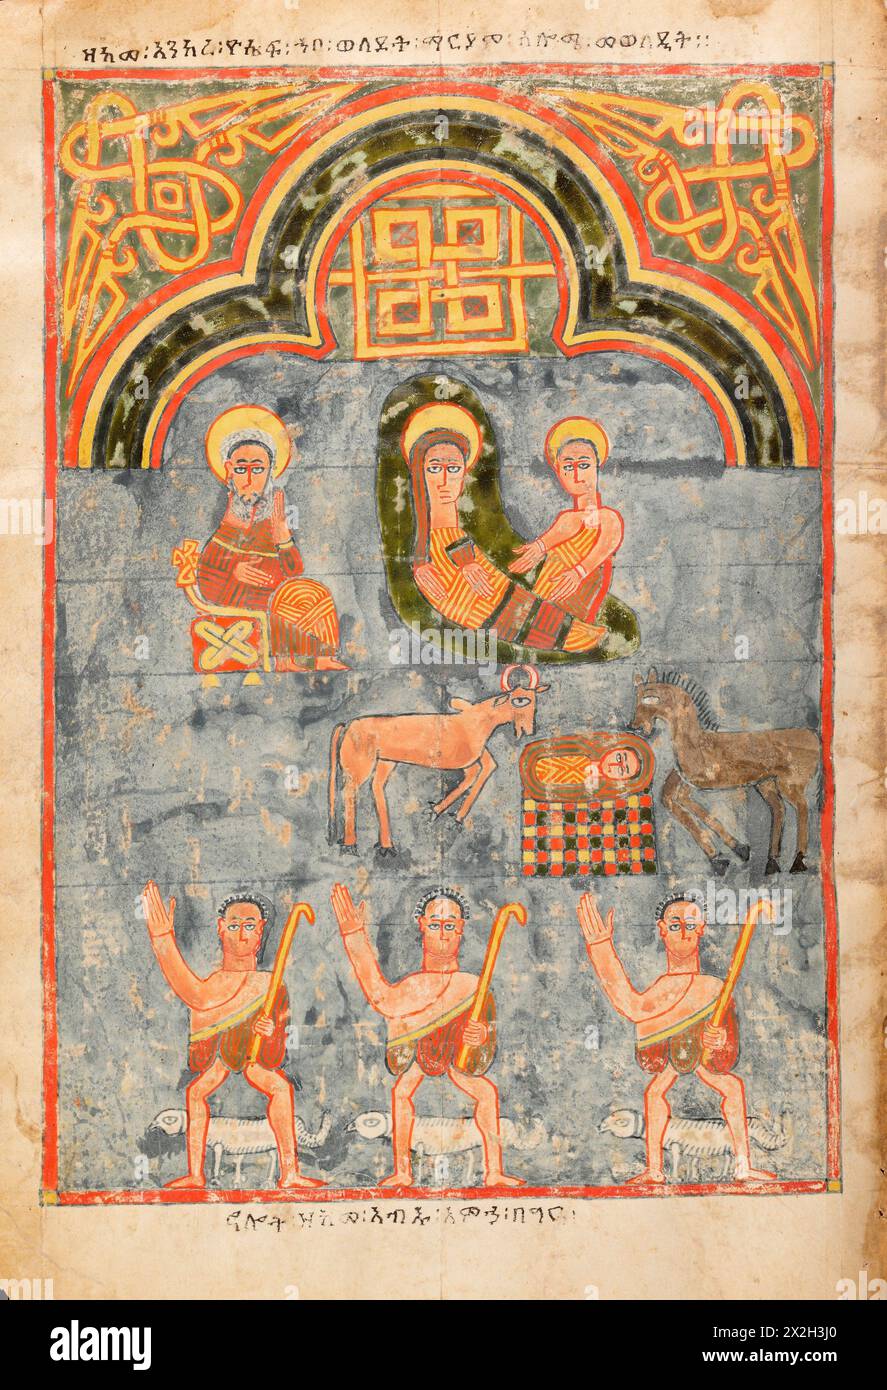 Evangile illuminé - peuples Amhara - la Nativité - fin du XIVe au début du XVe siècle Banque D'Images